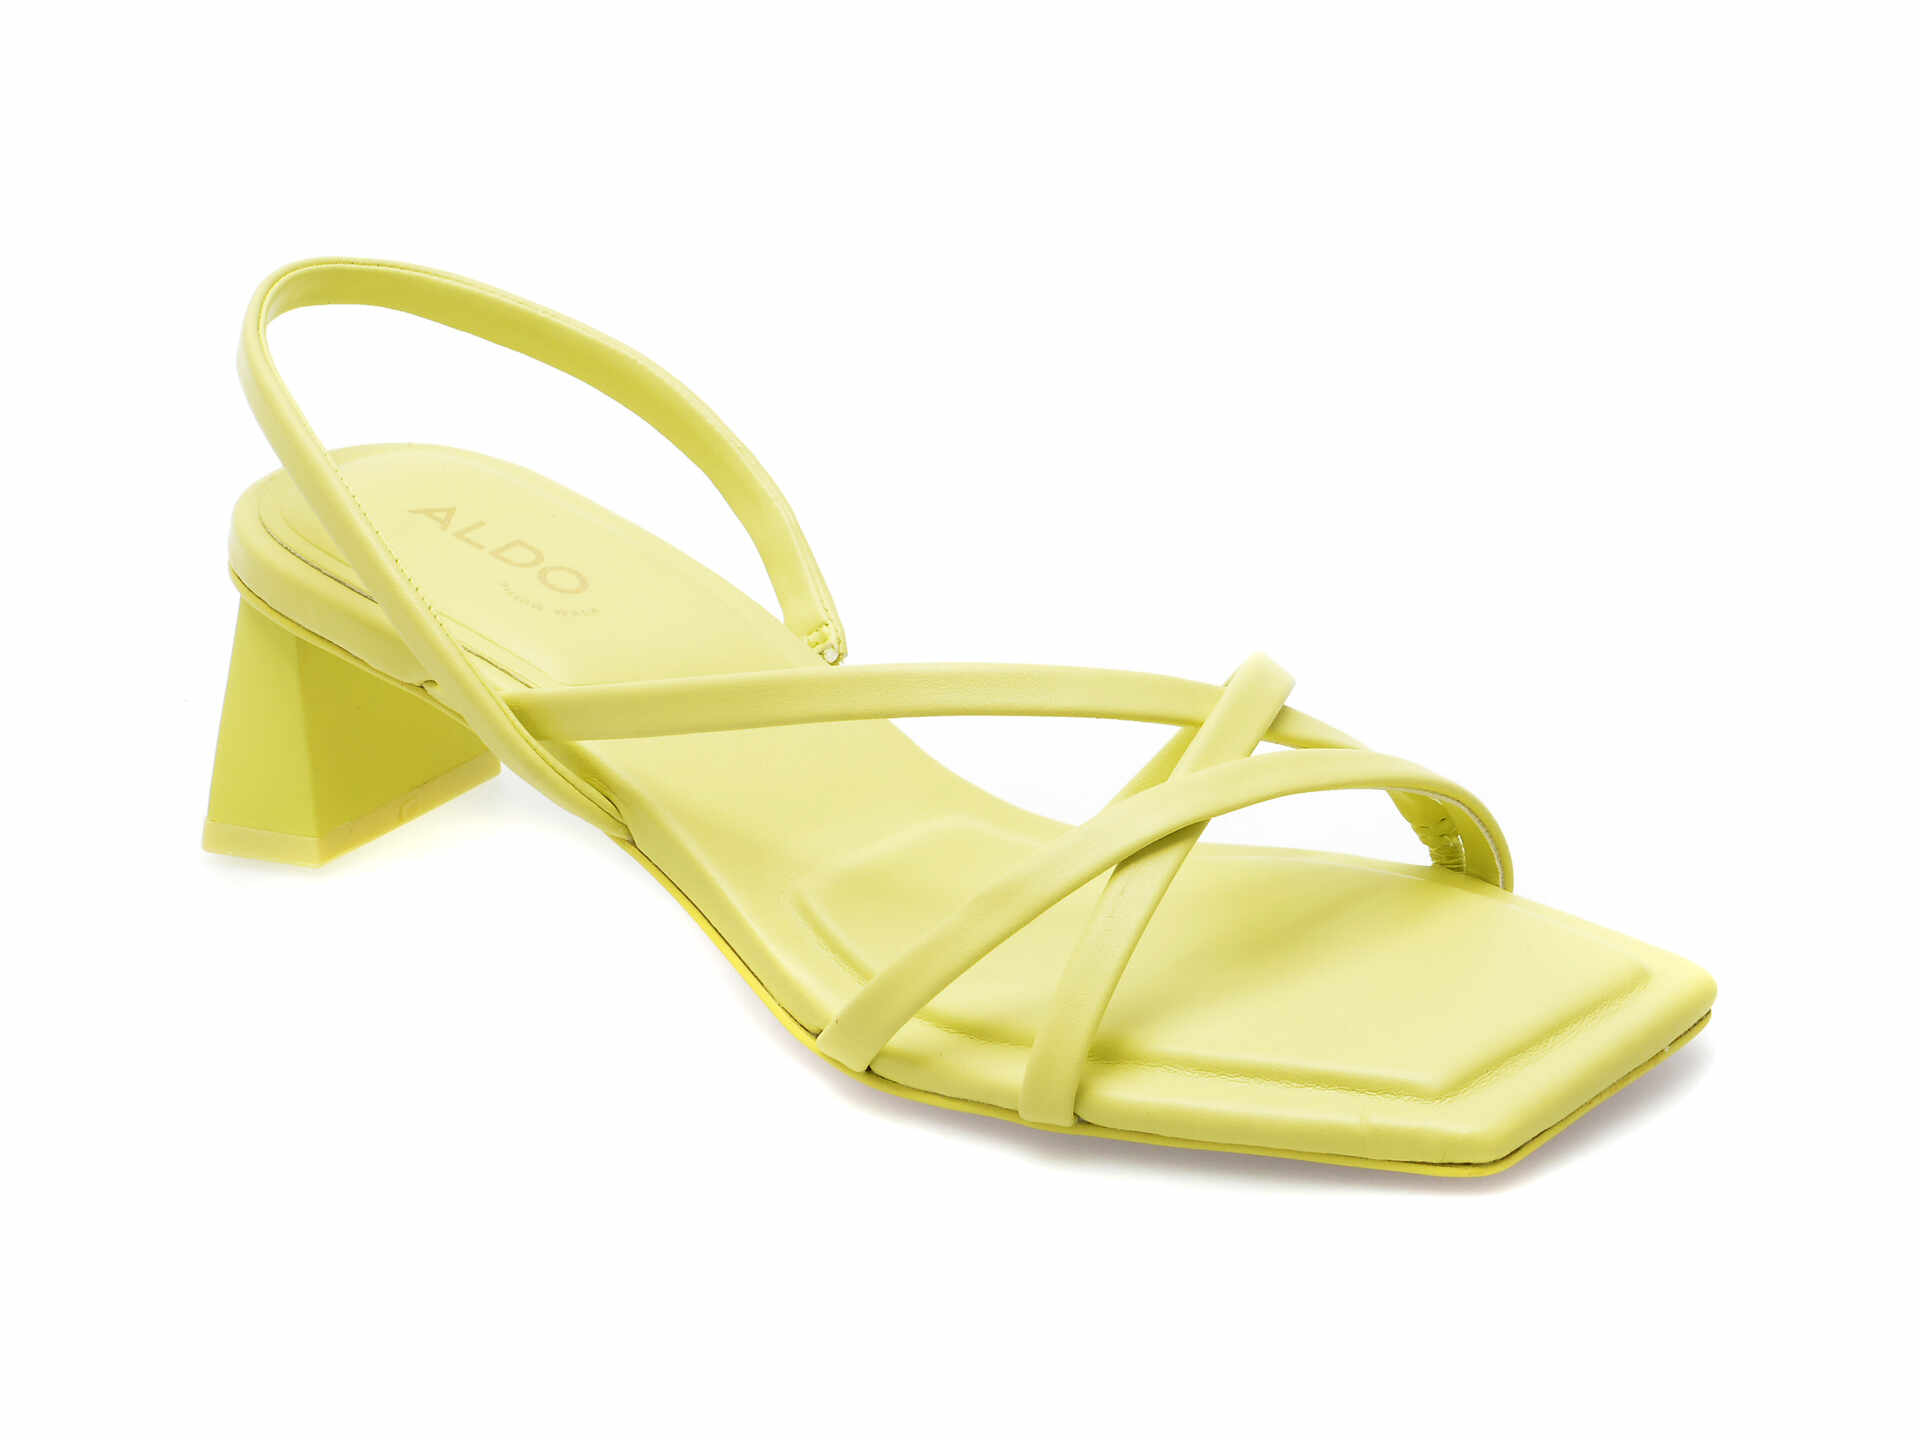 Sandale ALDO galbene, MINIMA720, din piele ecologica